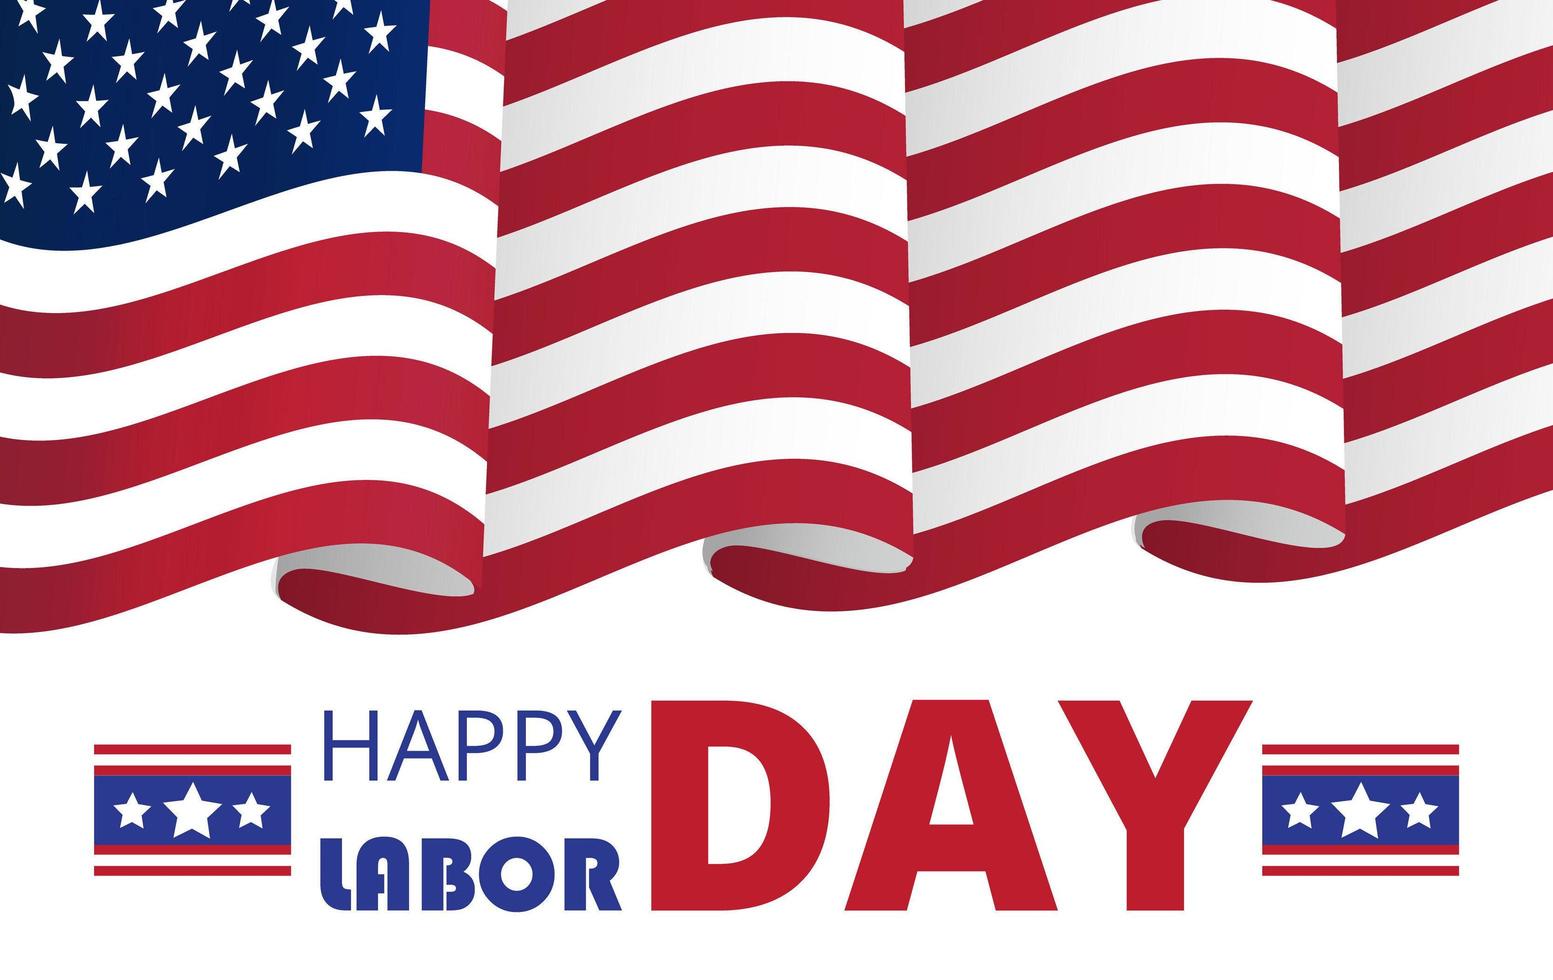 cartaz do dia do trabalho ou cabeçalho para web, interface do usuário, vetor de página de destino. feriado nacional dos estados unidos para os trabalhadores em setembro. bandeira dos EUA está acenando.